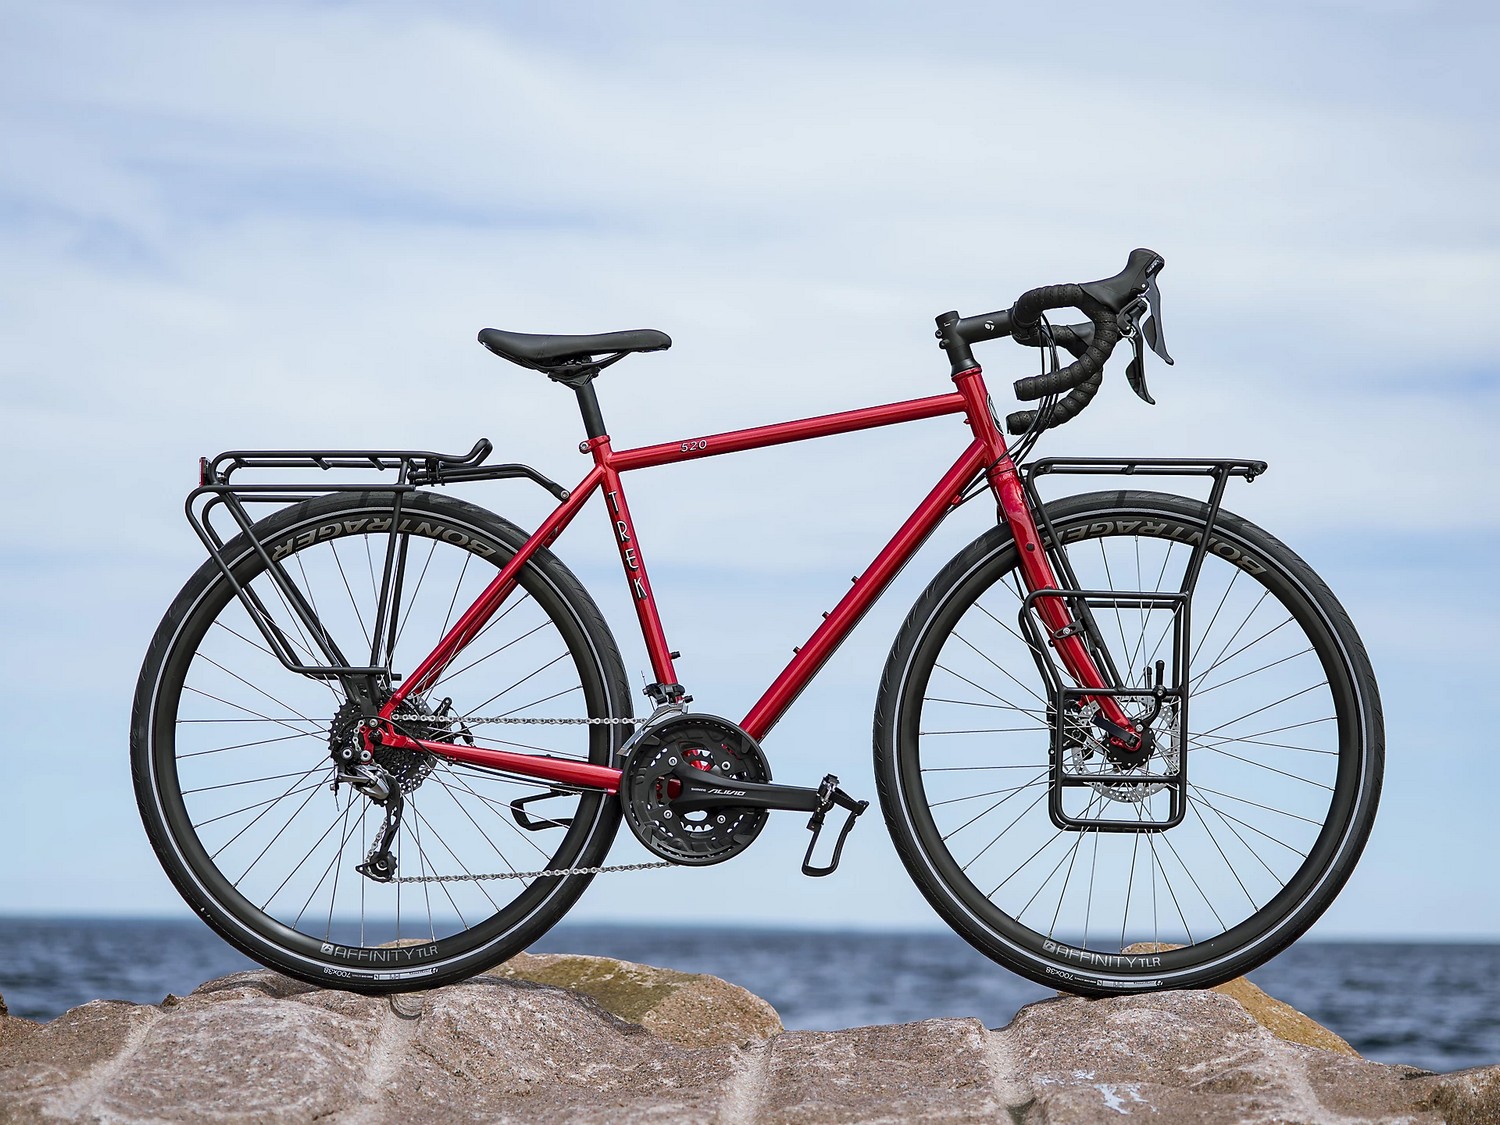 Дорожный велосипед Trek 520 Disc, год 2021, цвет Красный, ростовка 21